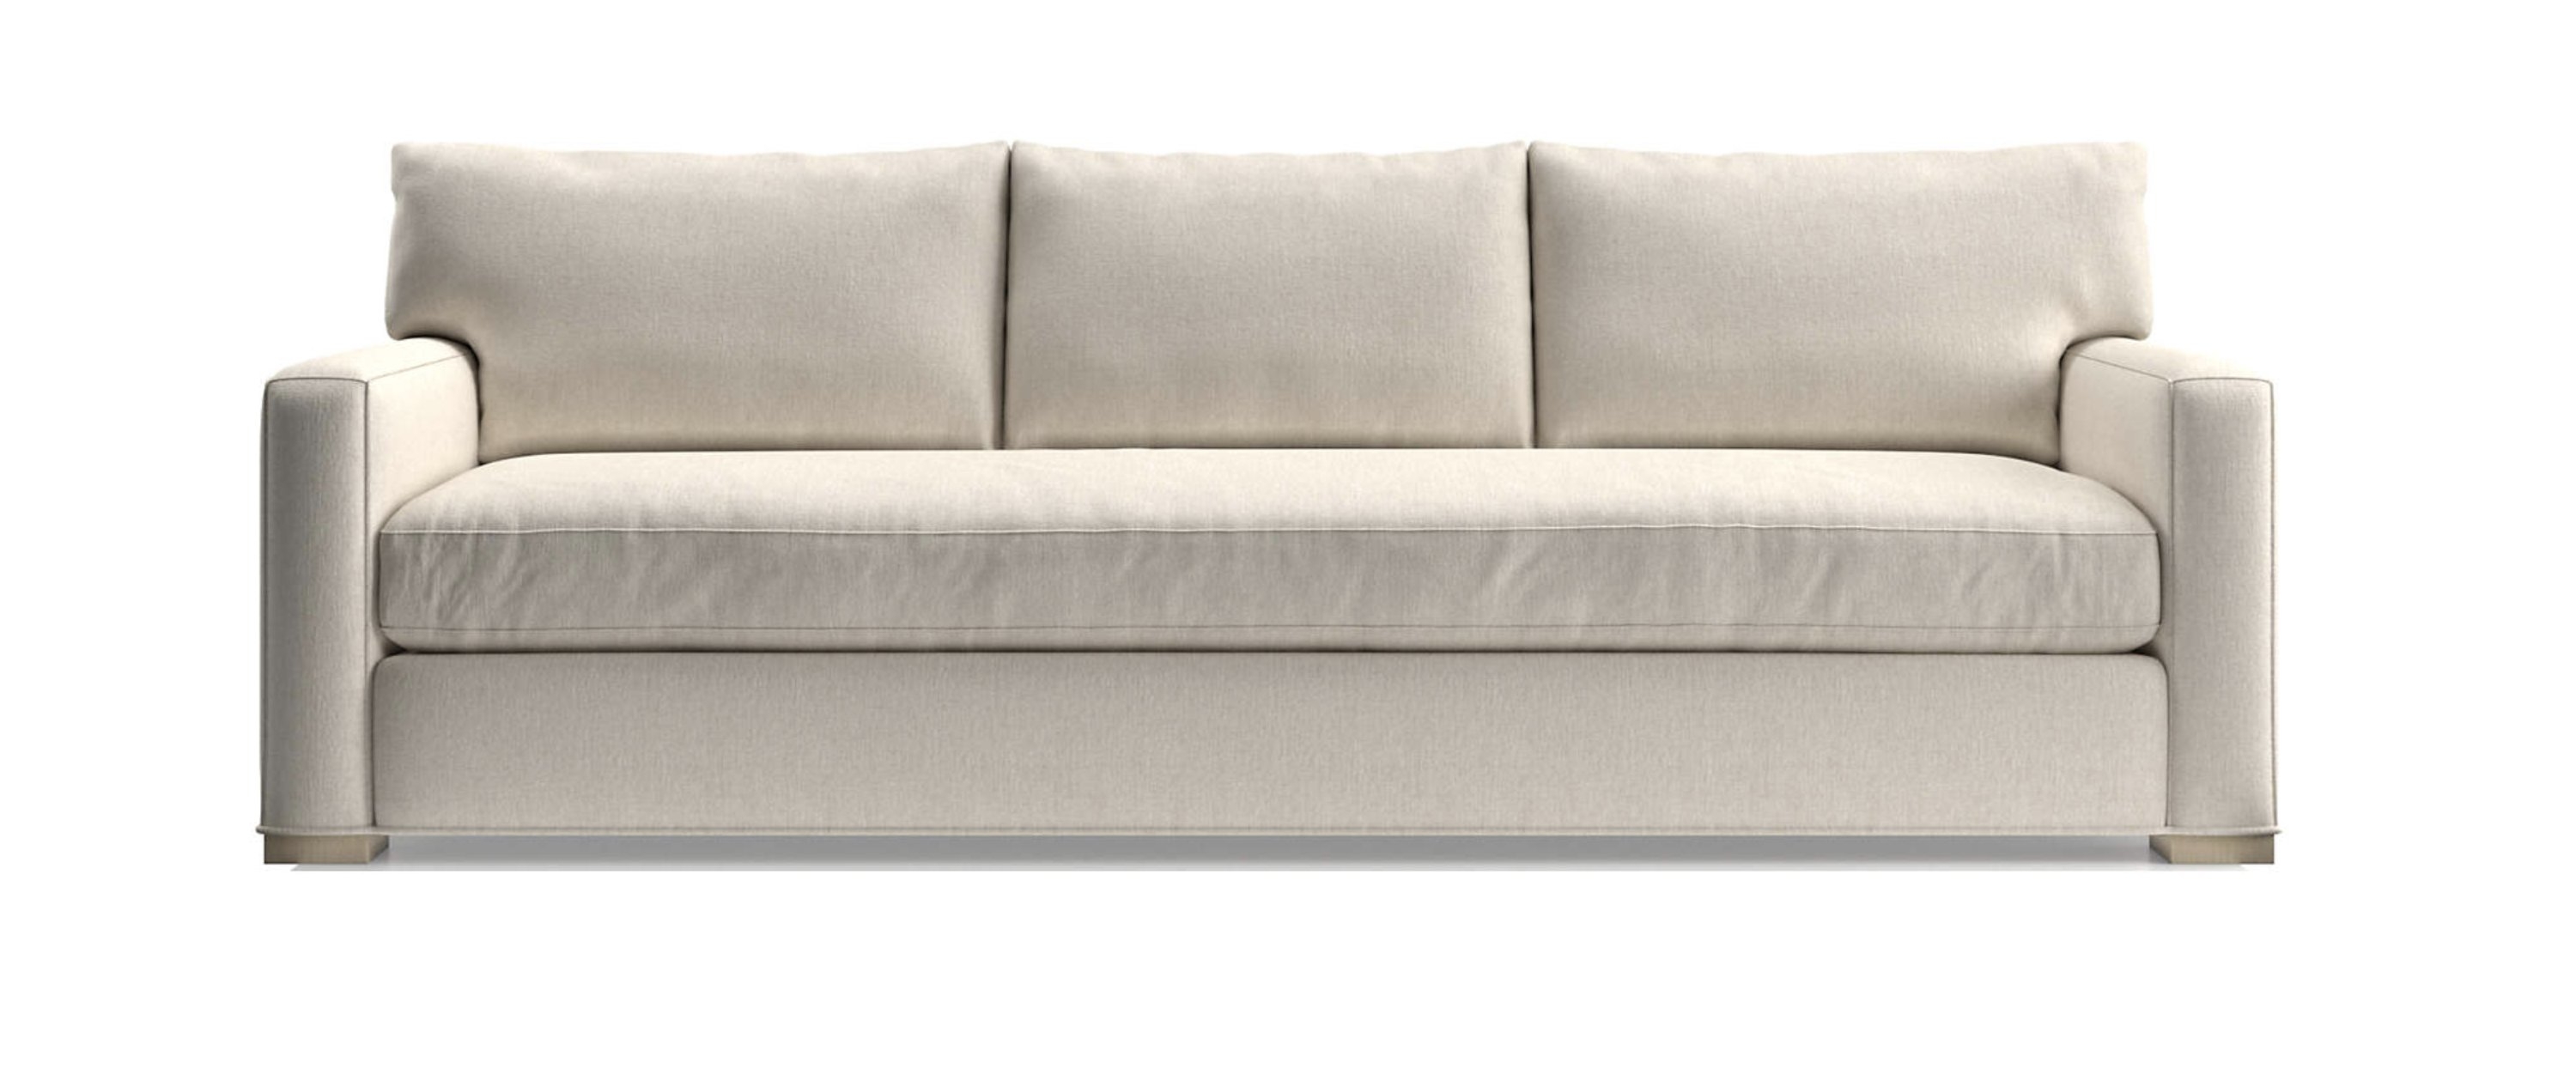 Axis Bench Grande Sofa - Image 0